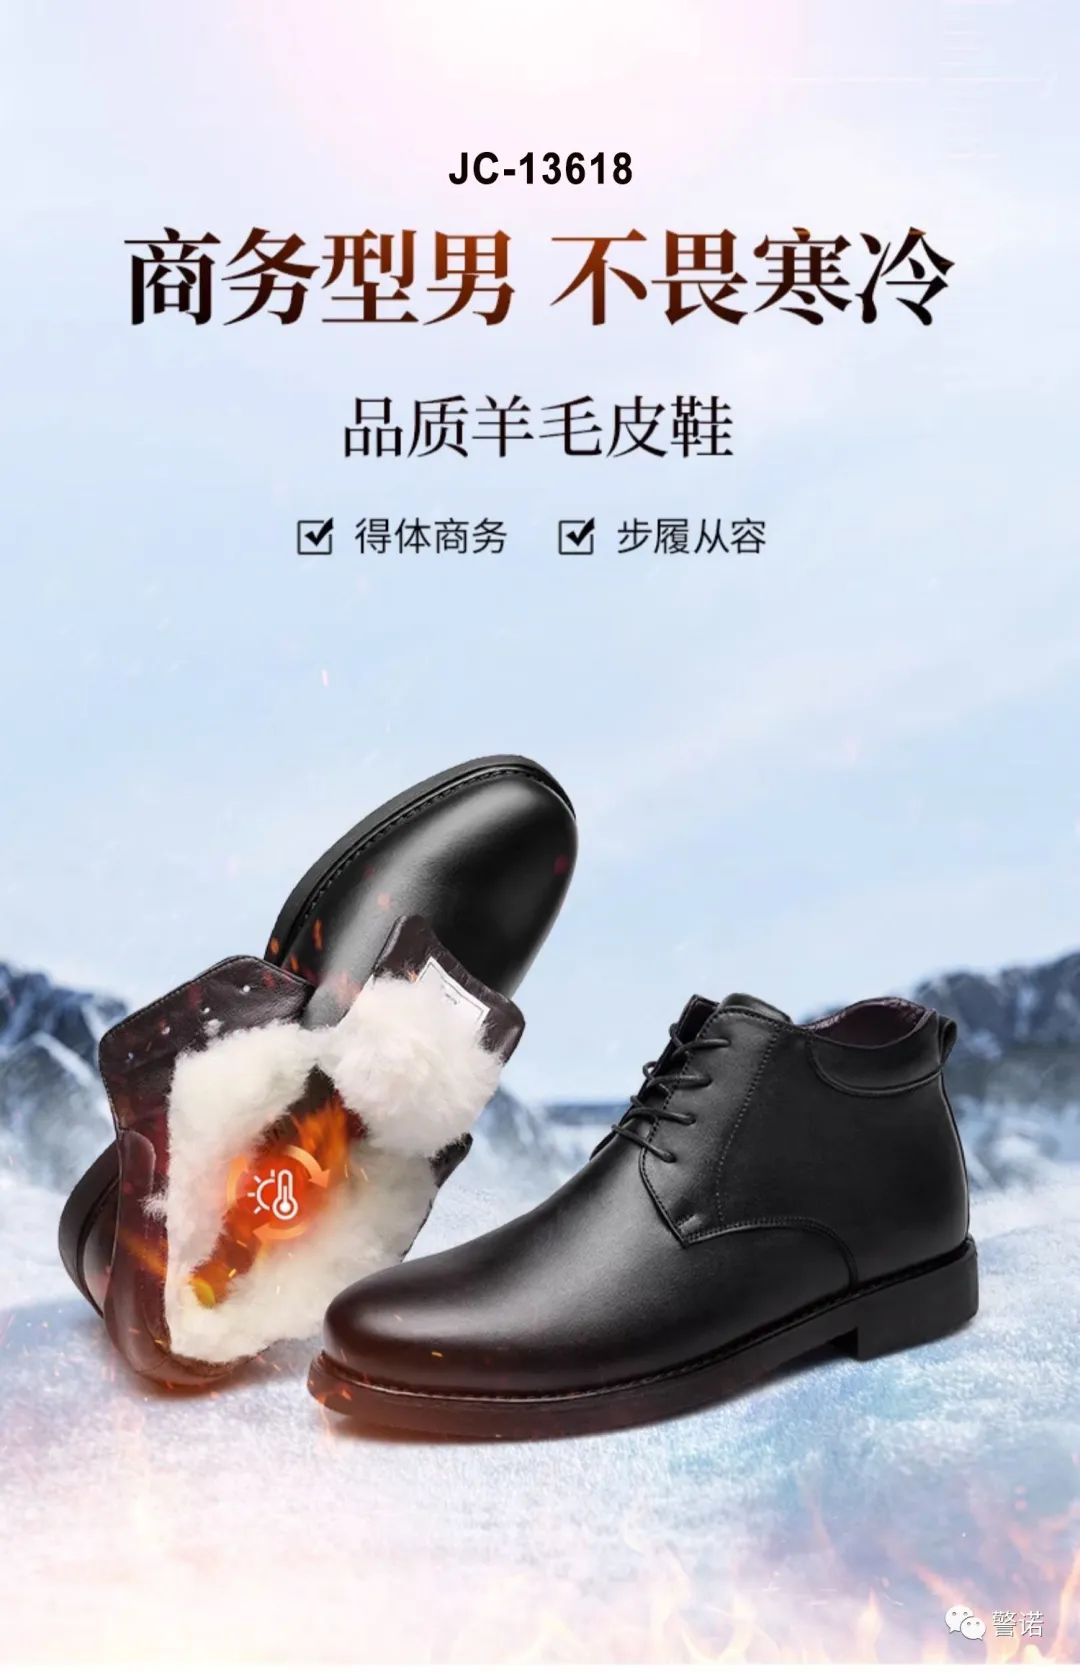 抗寒保暖加绒商务靴 冬日“小暖炉”